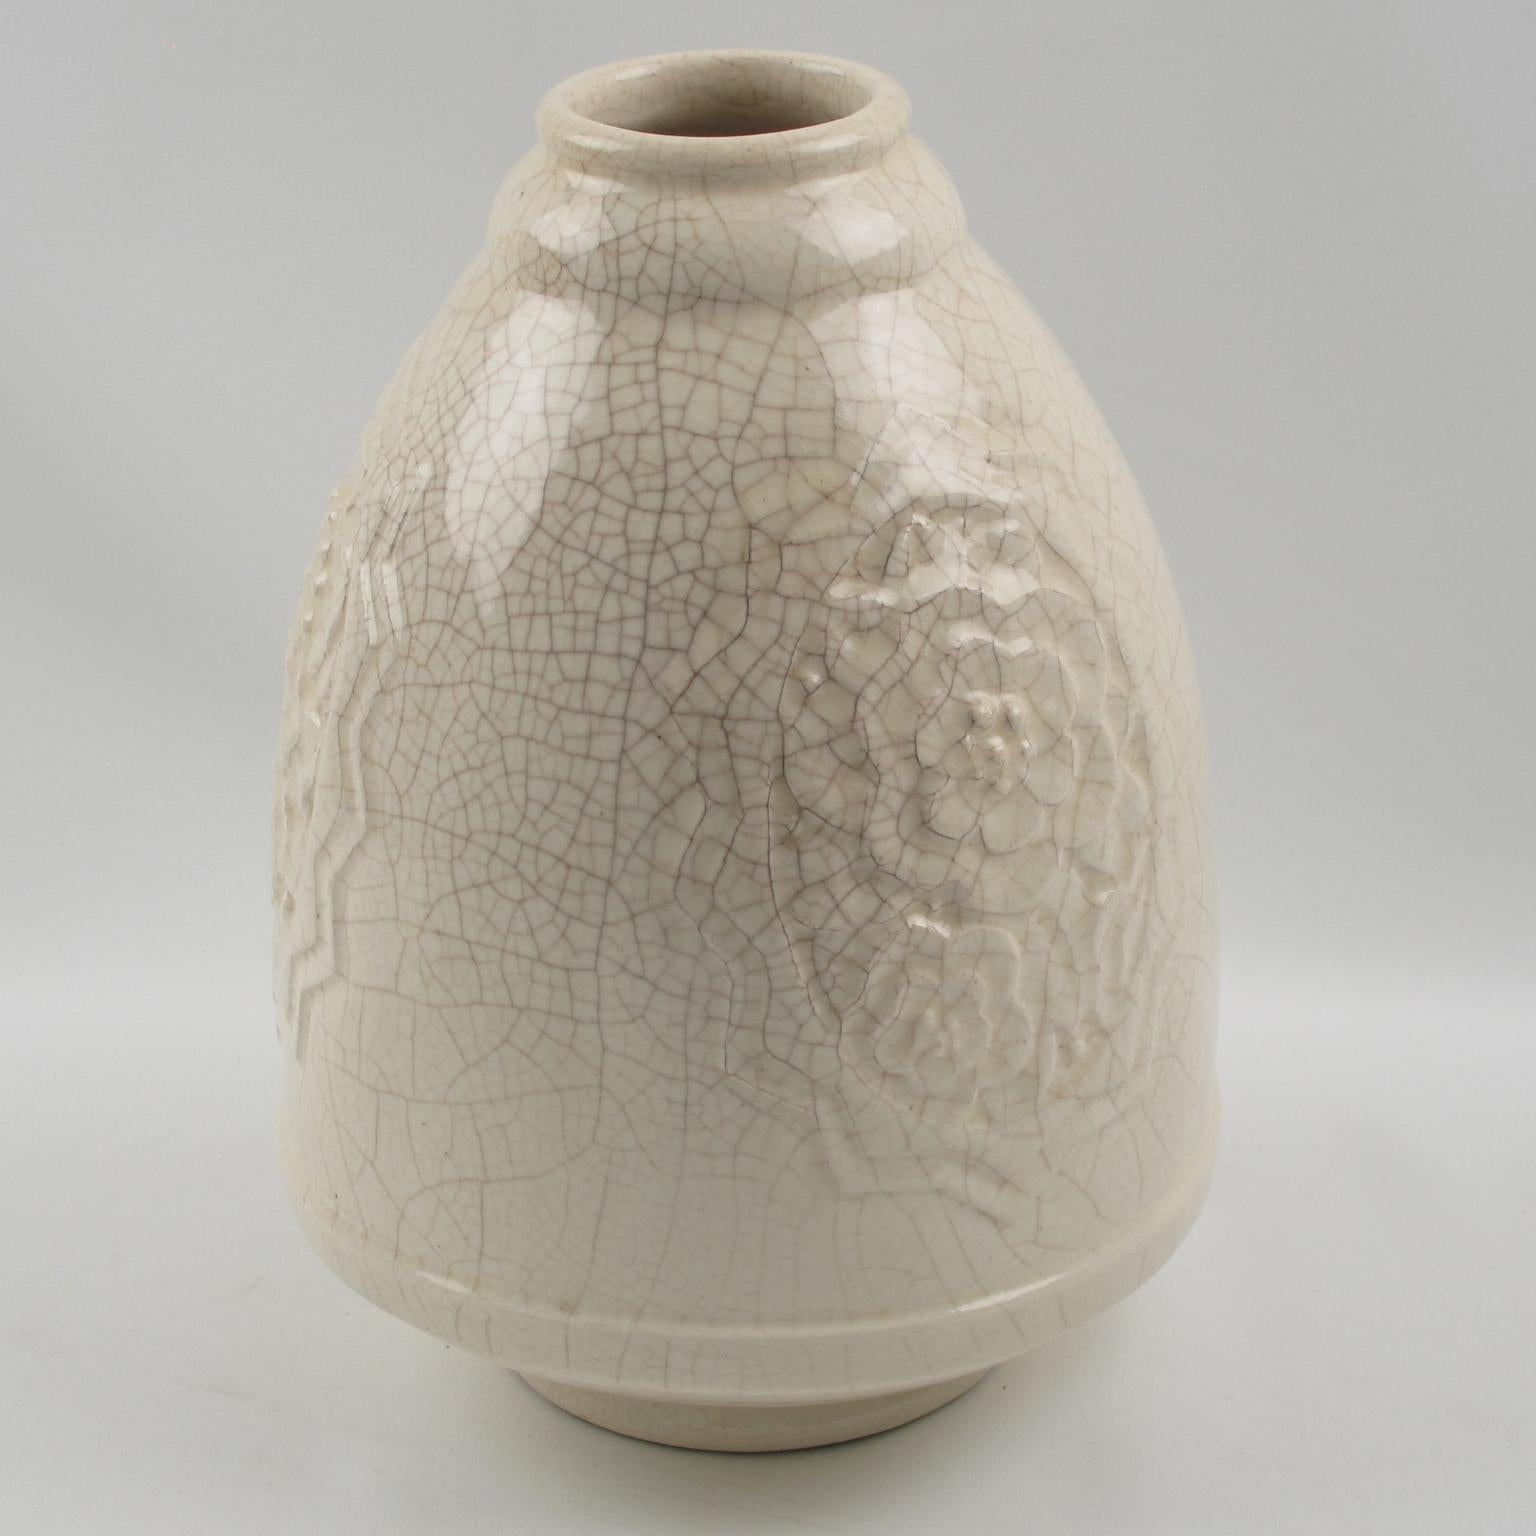 Faience Art Deco 1930s Off-White Crackle Glaze Ceramic Vase by Saint Clement